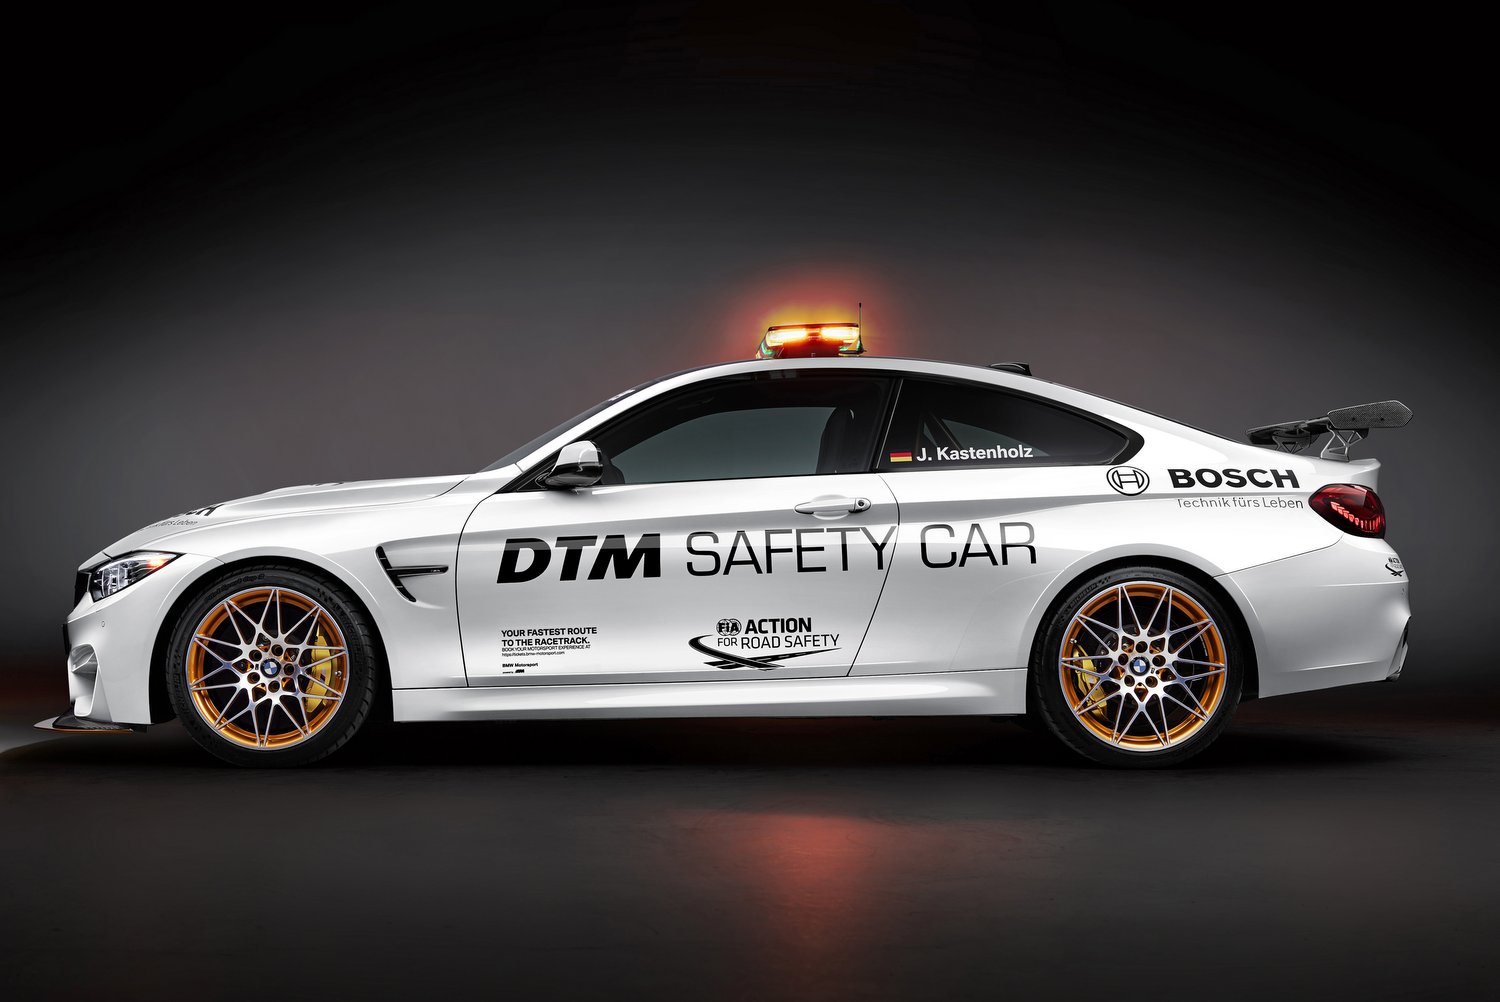 A legsportosabb BMW vigyáz a DTM biztonságára 6